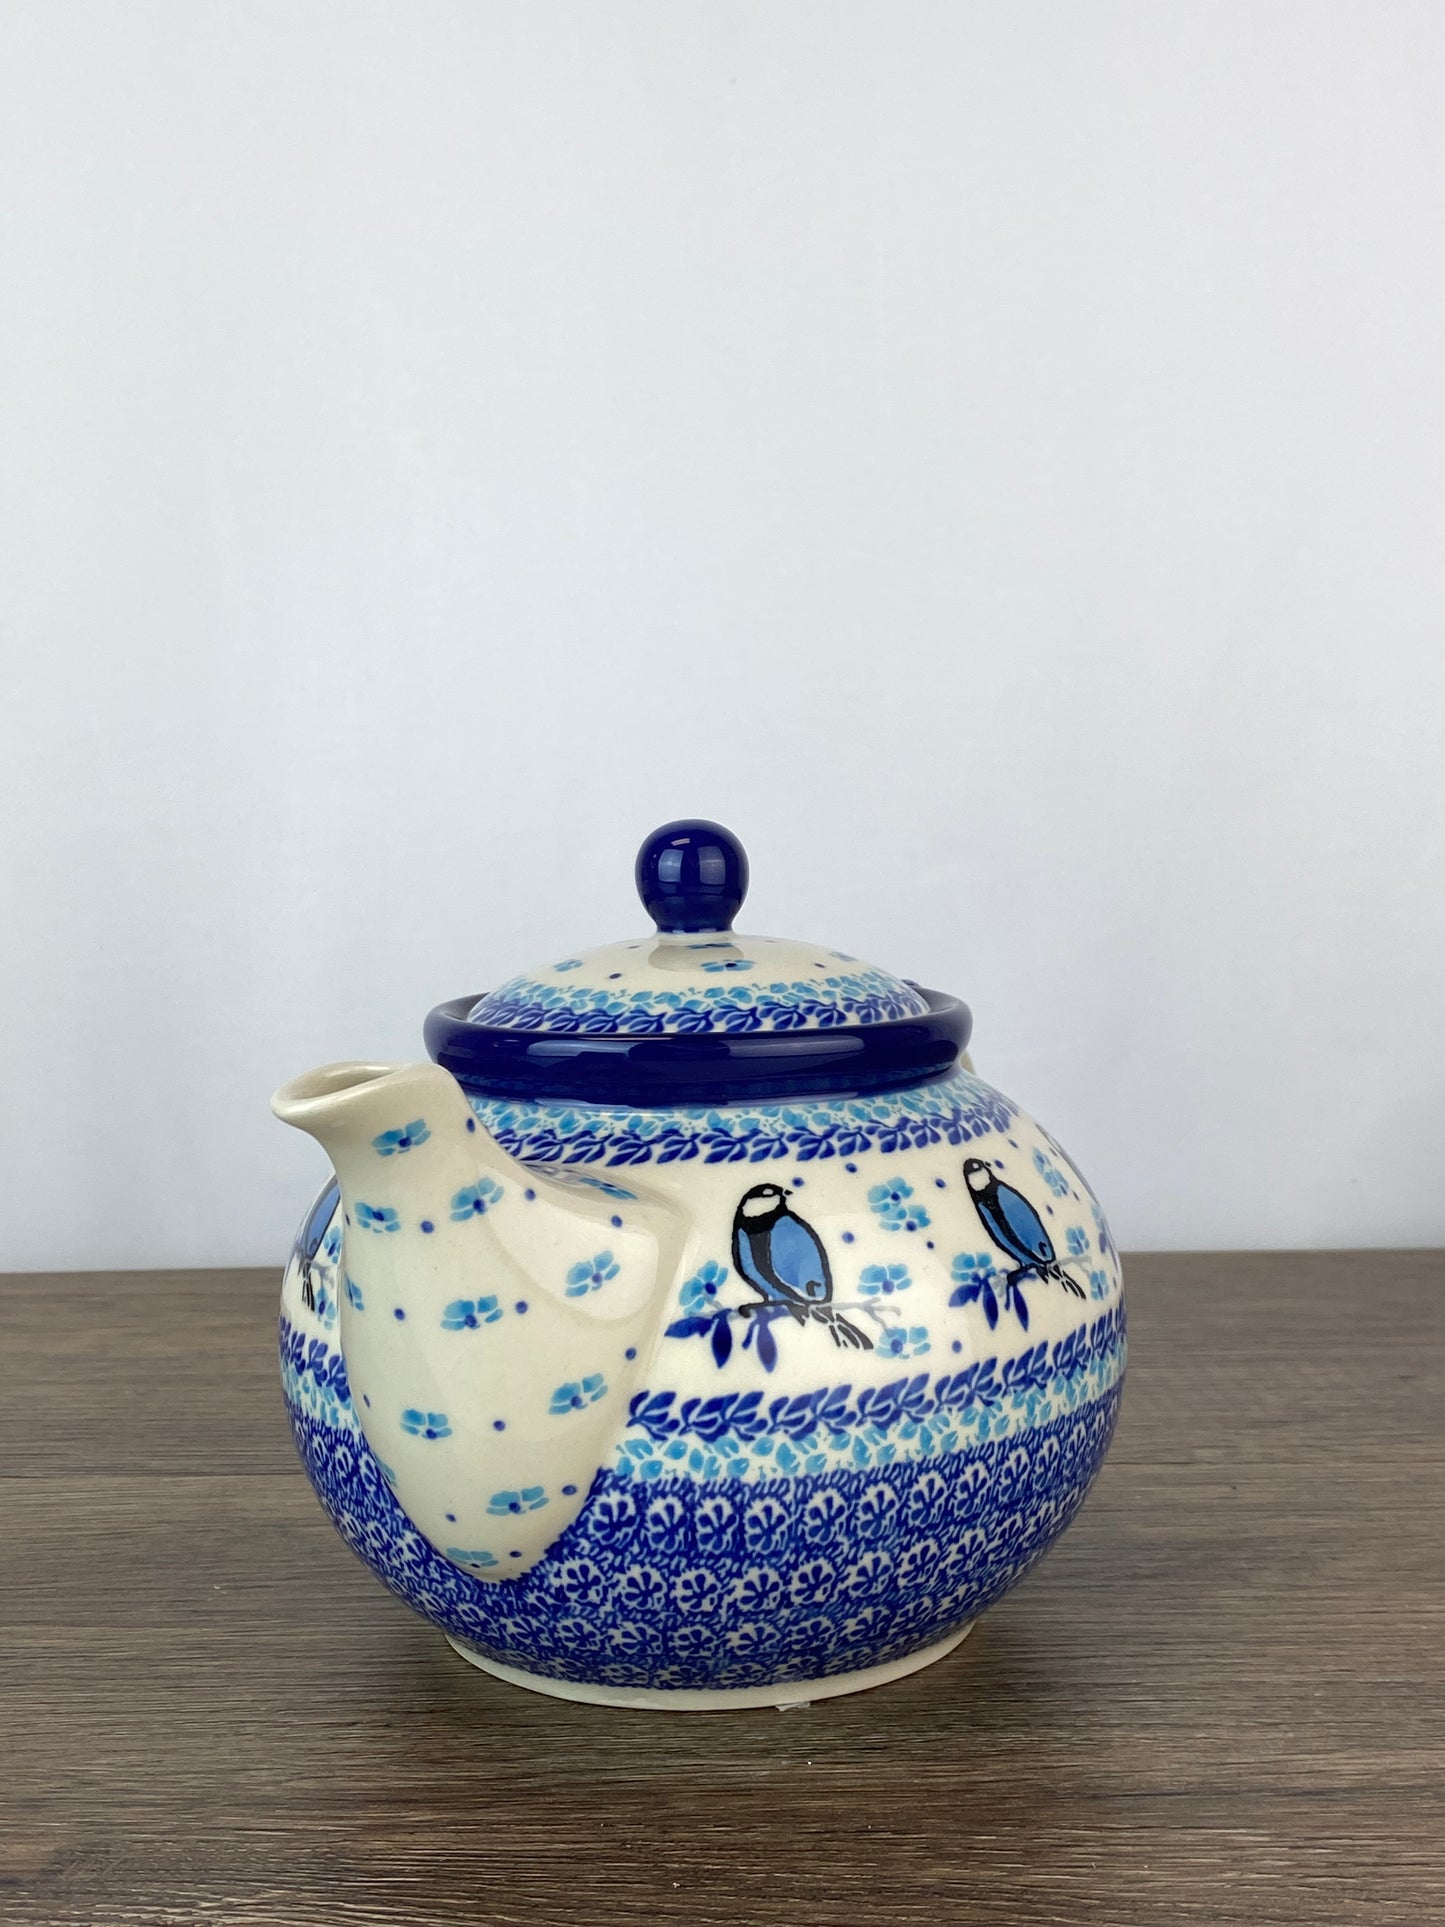 SALE 5 Cup Teapot - Shape 60 - Pattern 2679